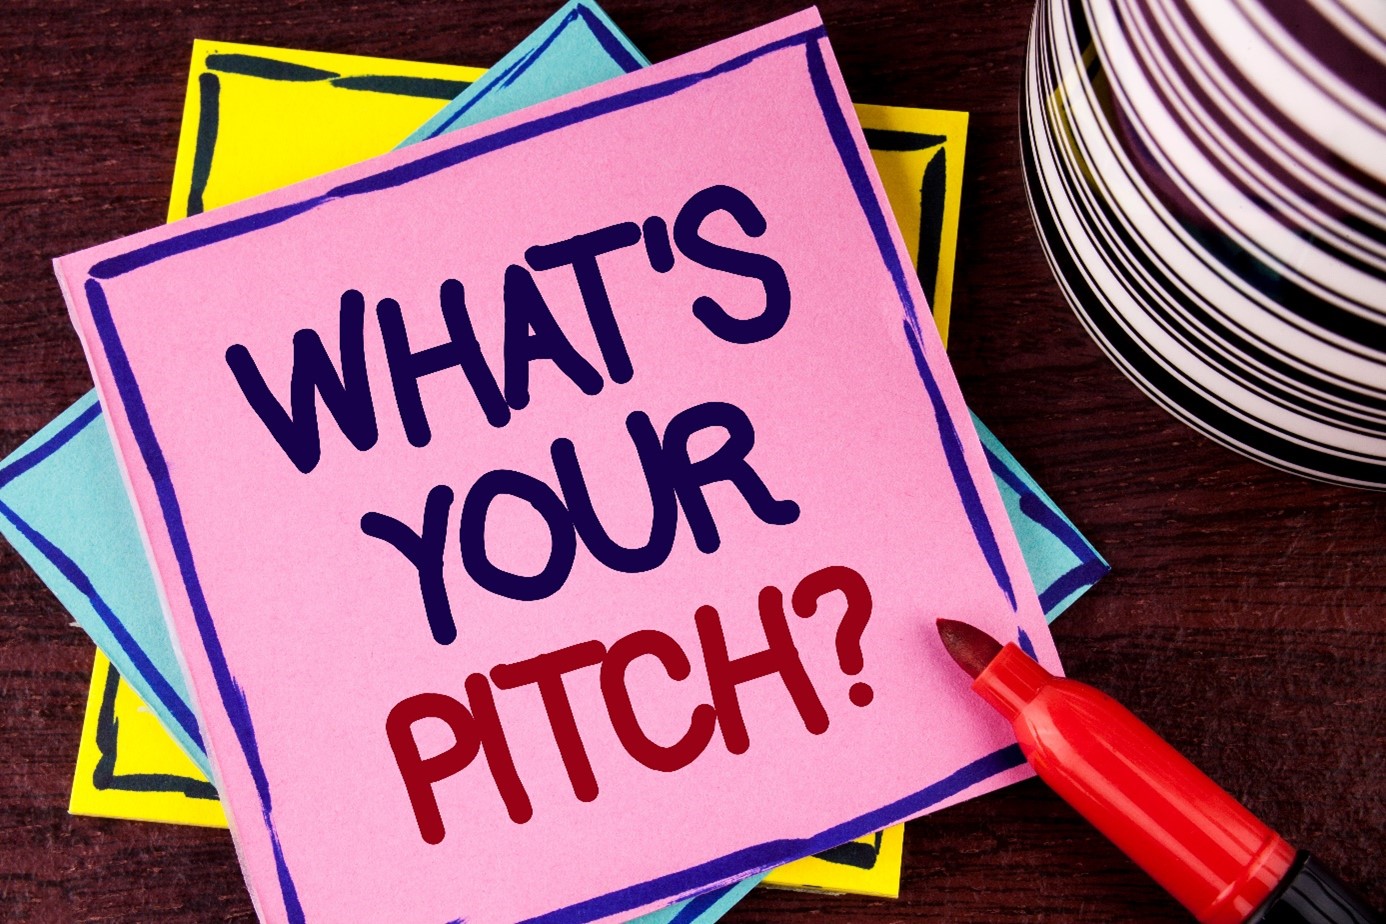 De kracht van een perfecte pitch! [blog]